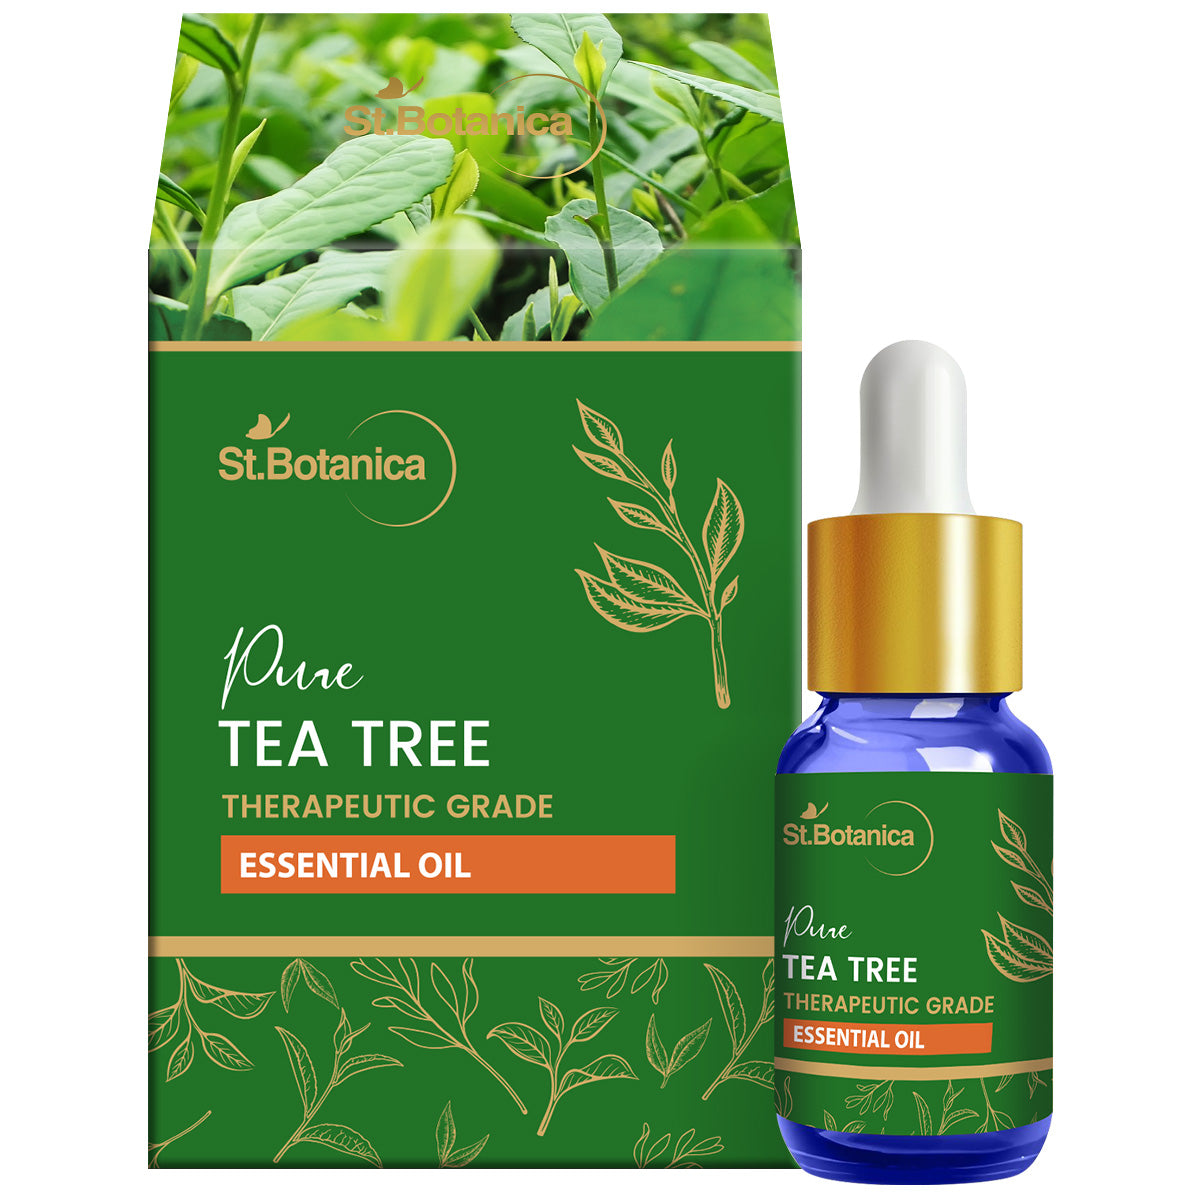 St.Botanica Pure Tea Tree Essential Oil, 15ml